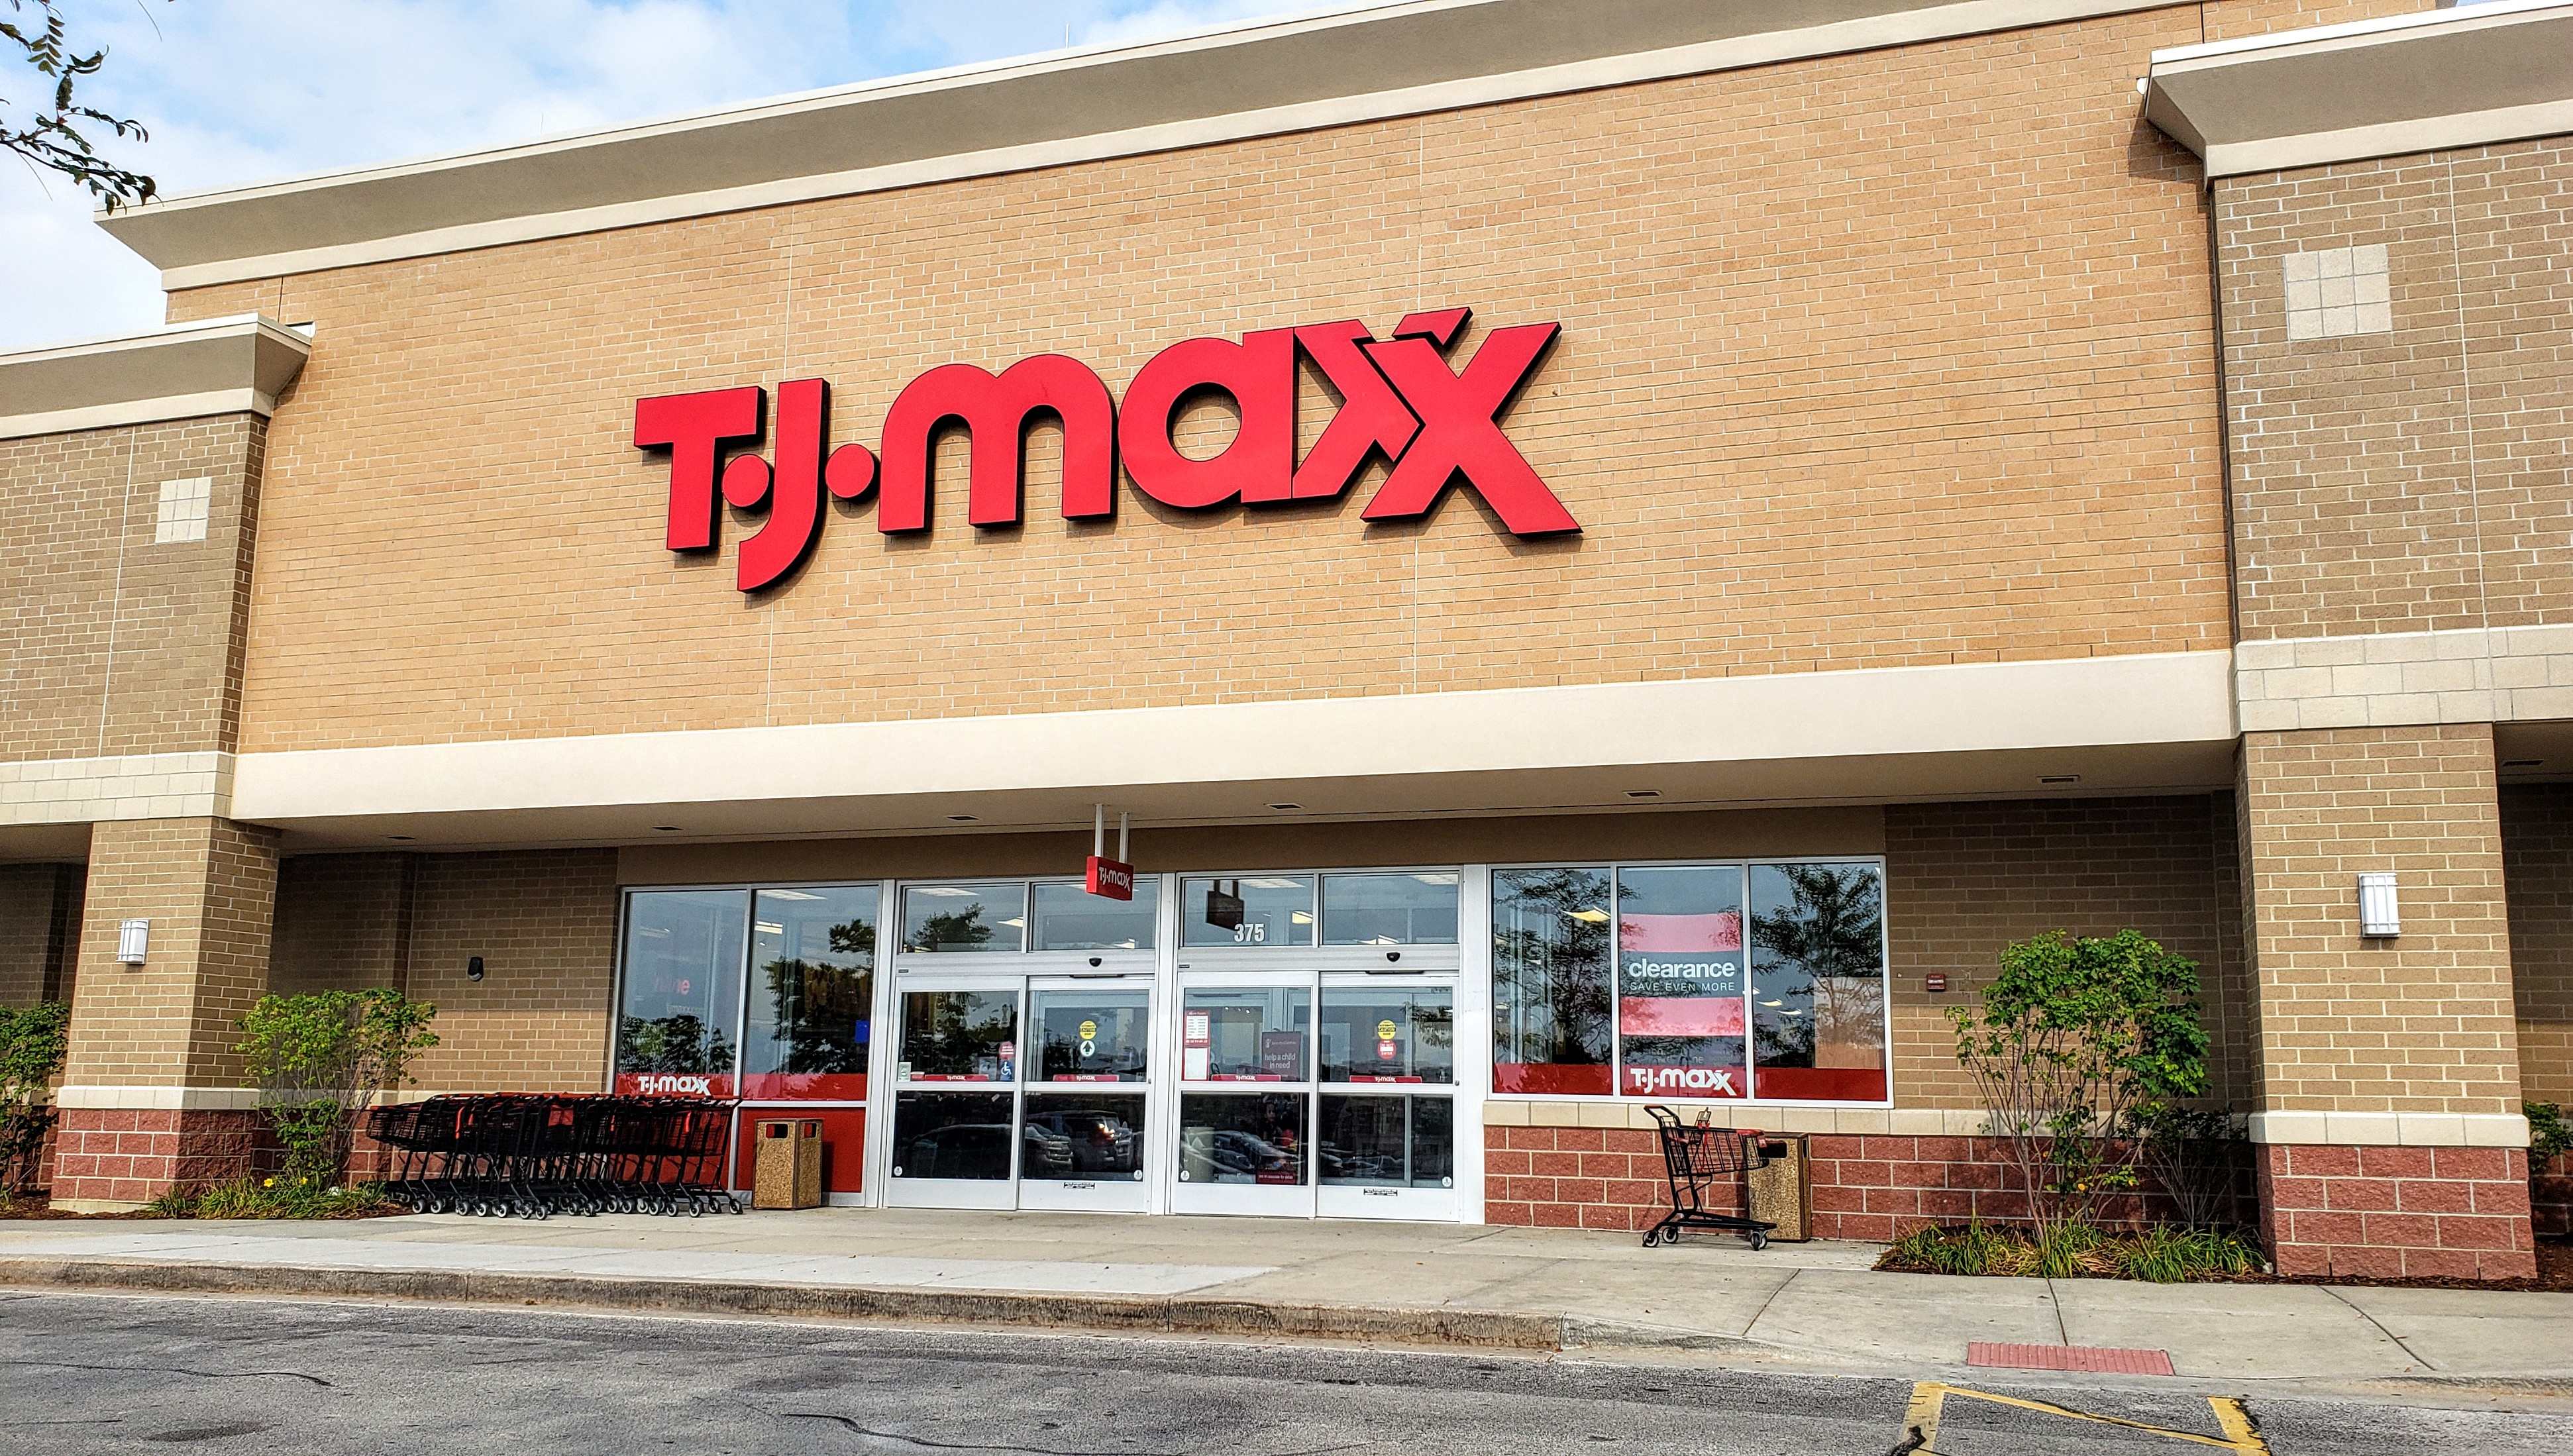 T.J.Maxx, Retail company, Framingham MA